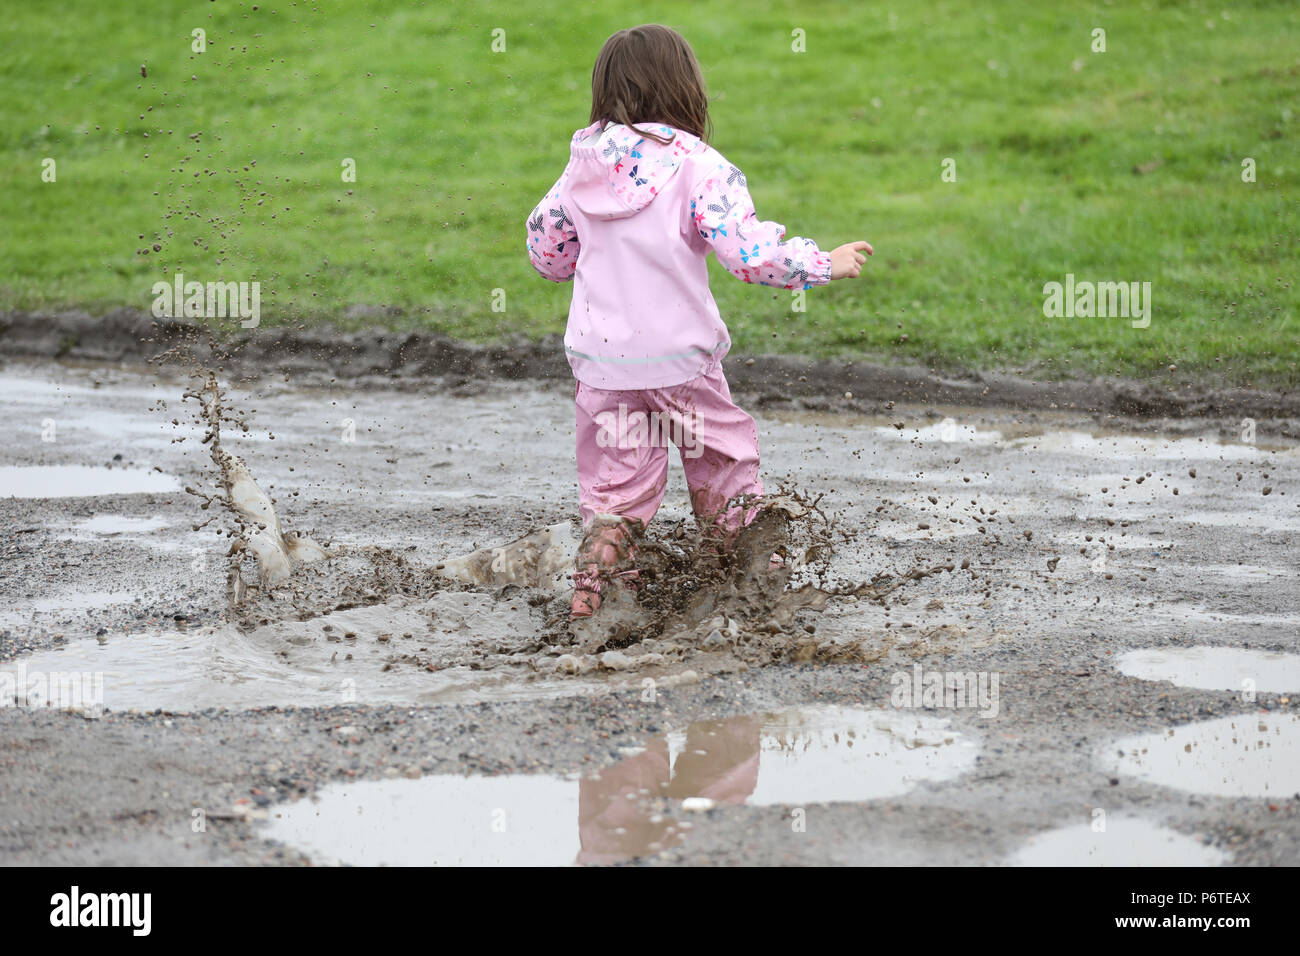 Hambourg, enfant en vêtements de pluie en marche dans une flaque d'eau Banque D'Images